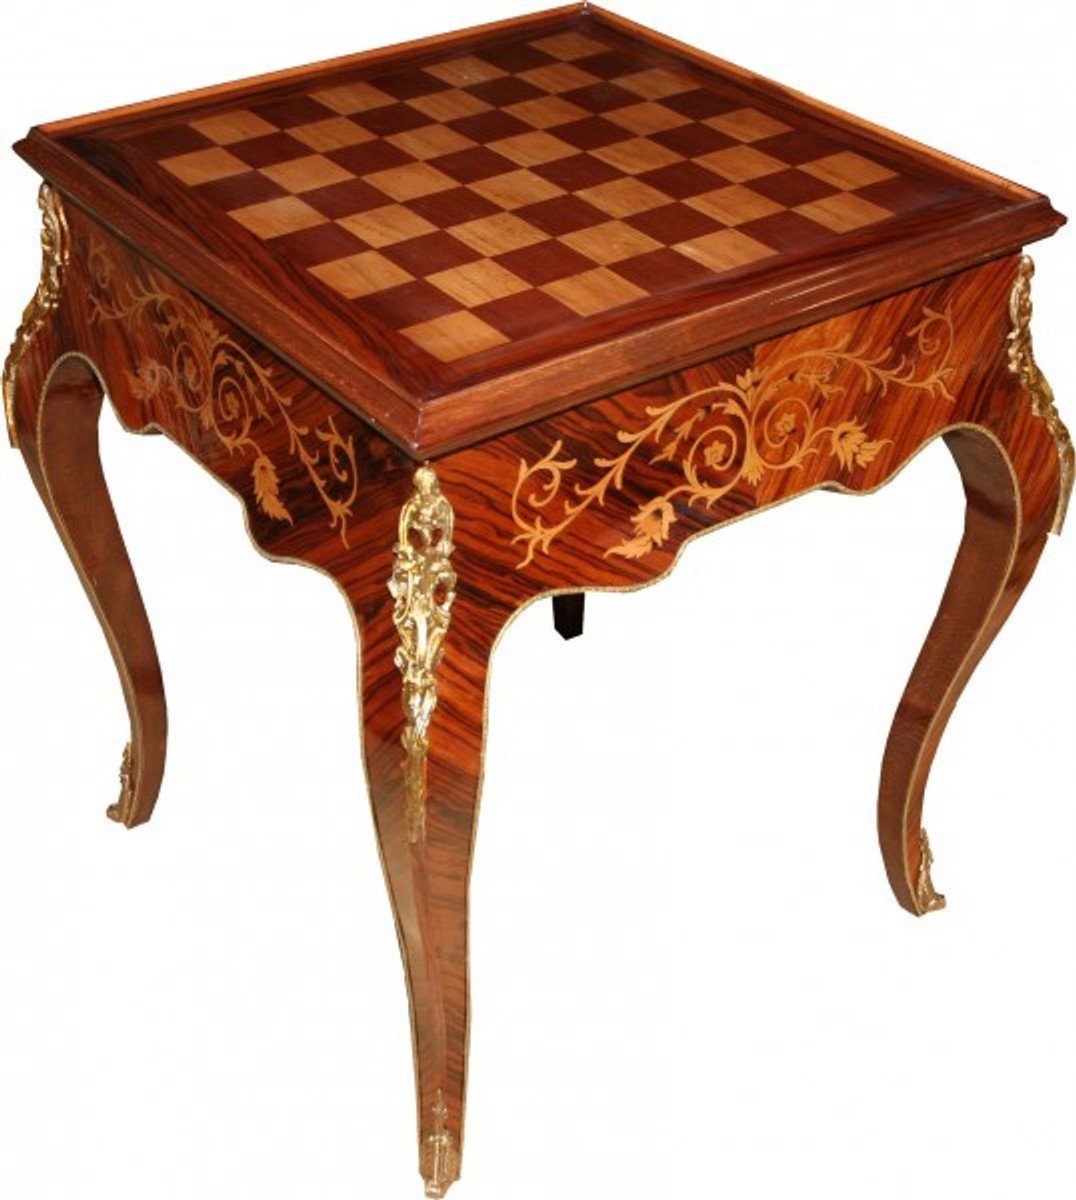 Casa Padrino Gamingtisch Art Deco Spieltisch Schach / Backgammon Tisch Mahagoni Braun Intarsien L 60 x B 60 x H 71 cm - Möbel Antik Stil Barock